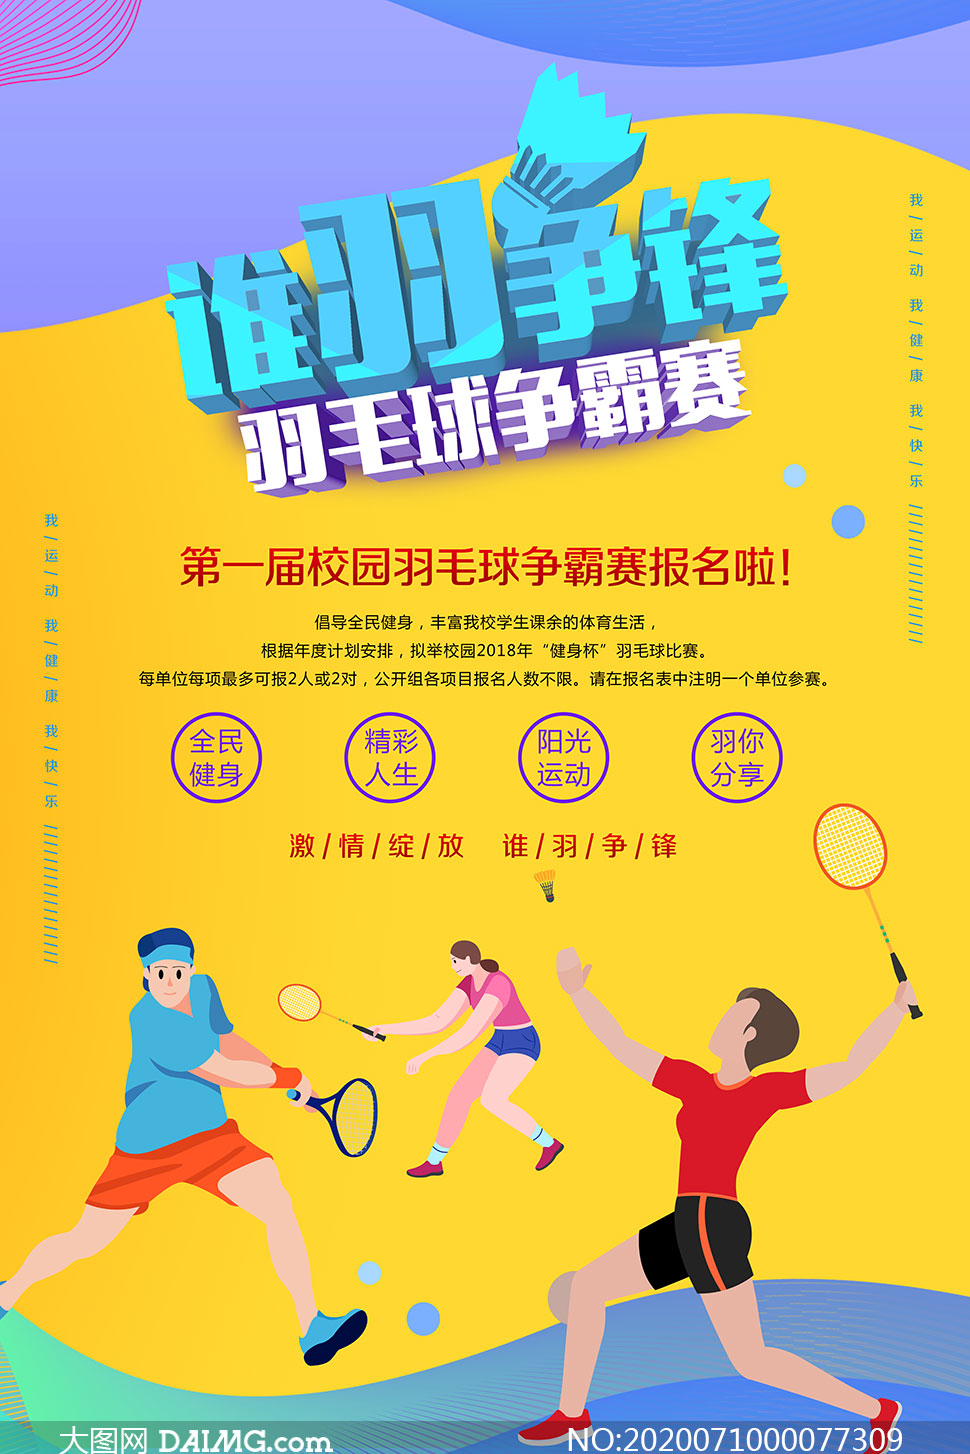 谁羽争锋羽毛球比赛宣传海报psd素材